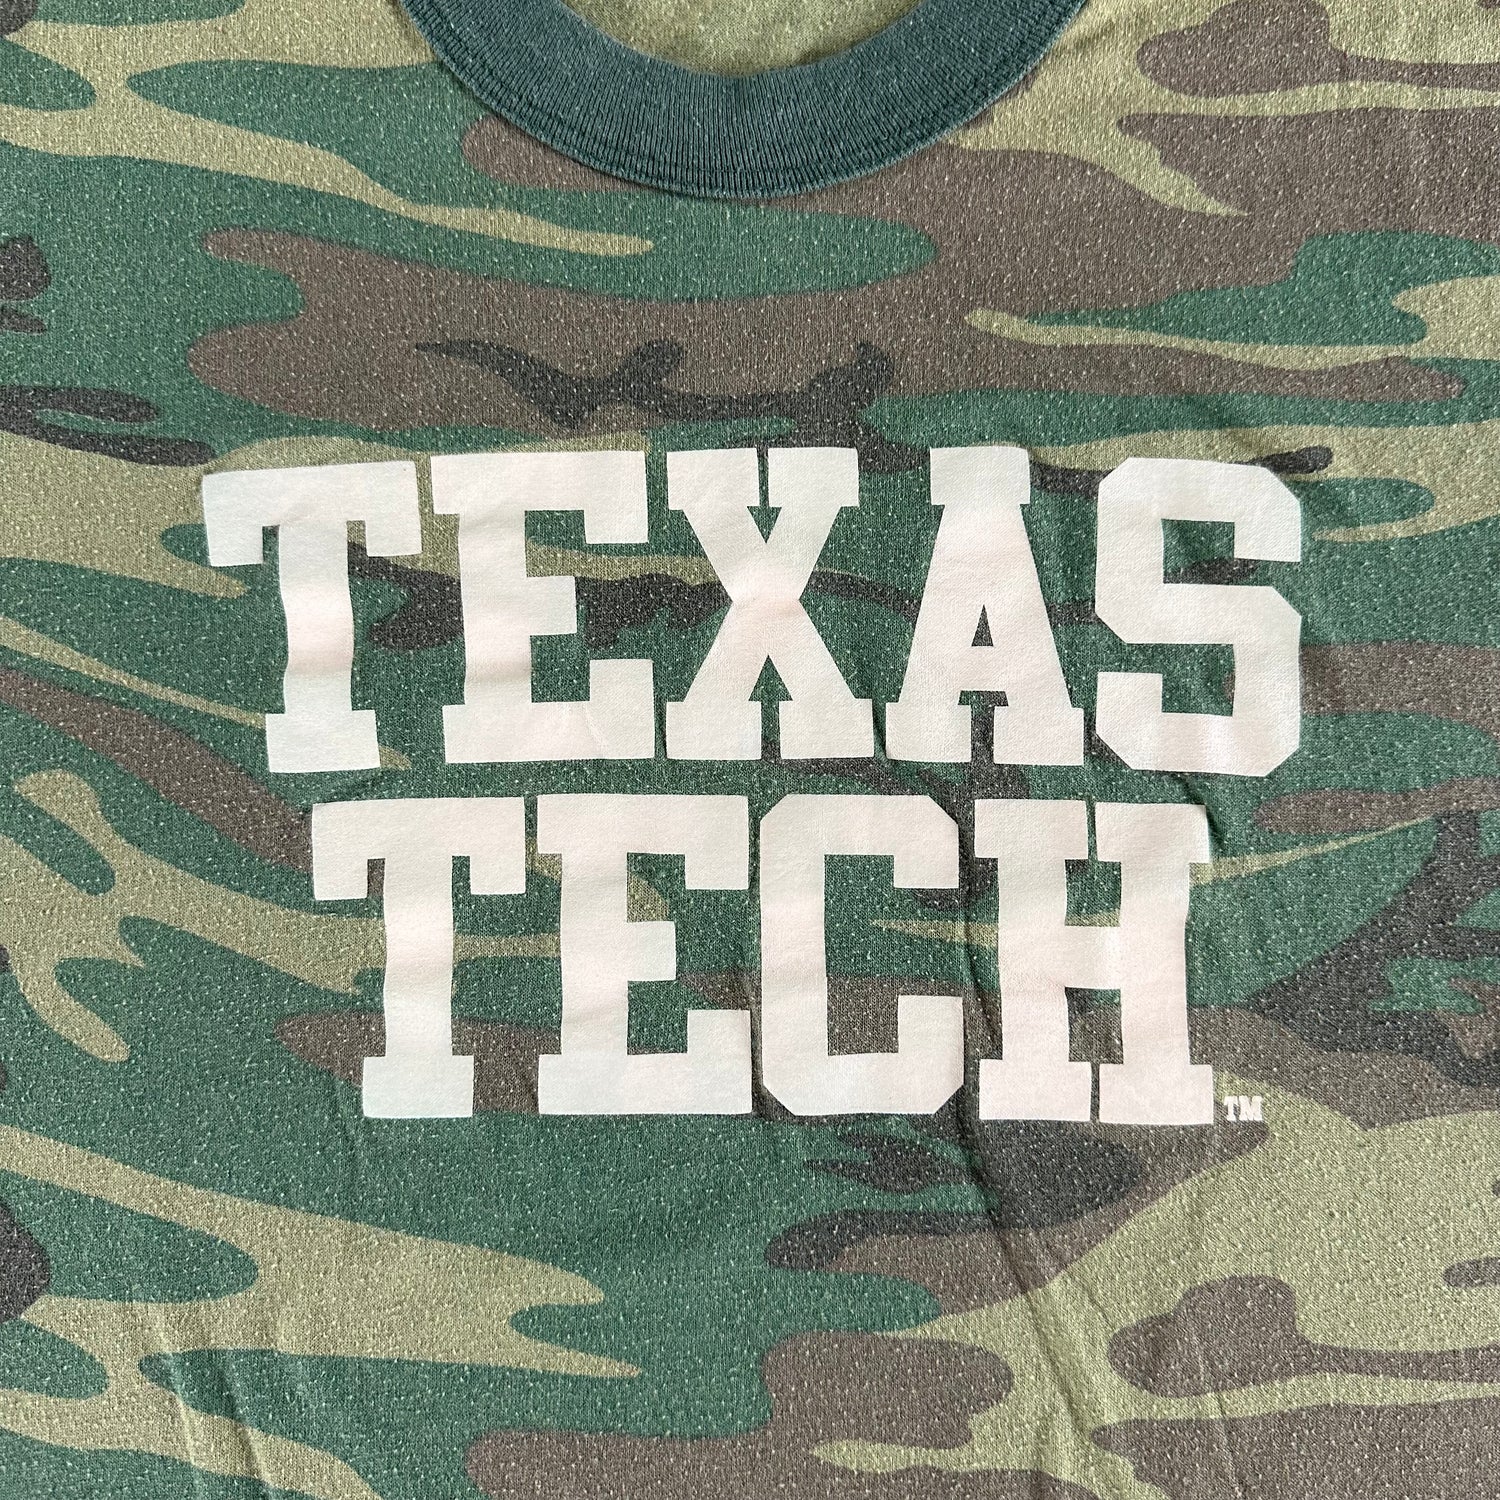 Vintage 1980s Texas Tech University T-shirt size Medium